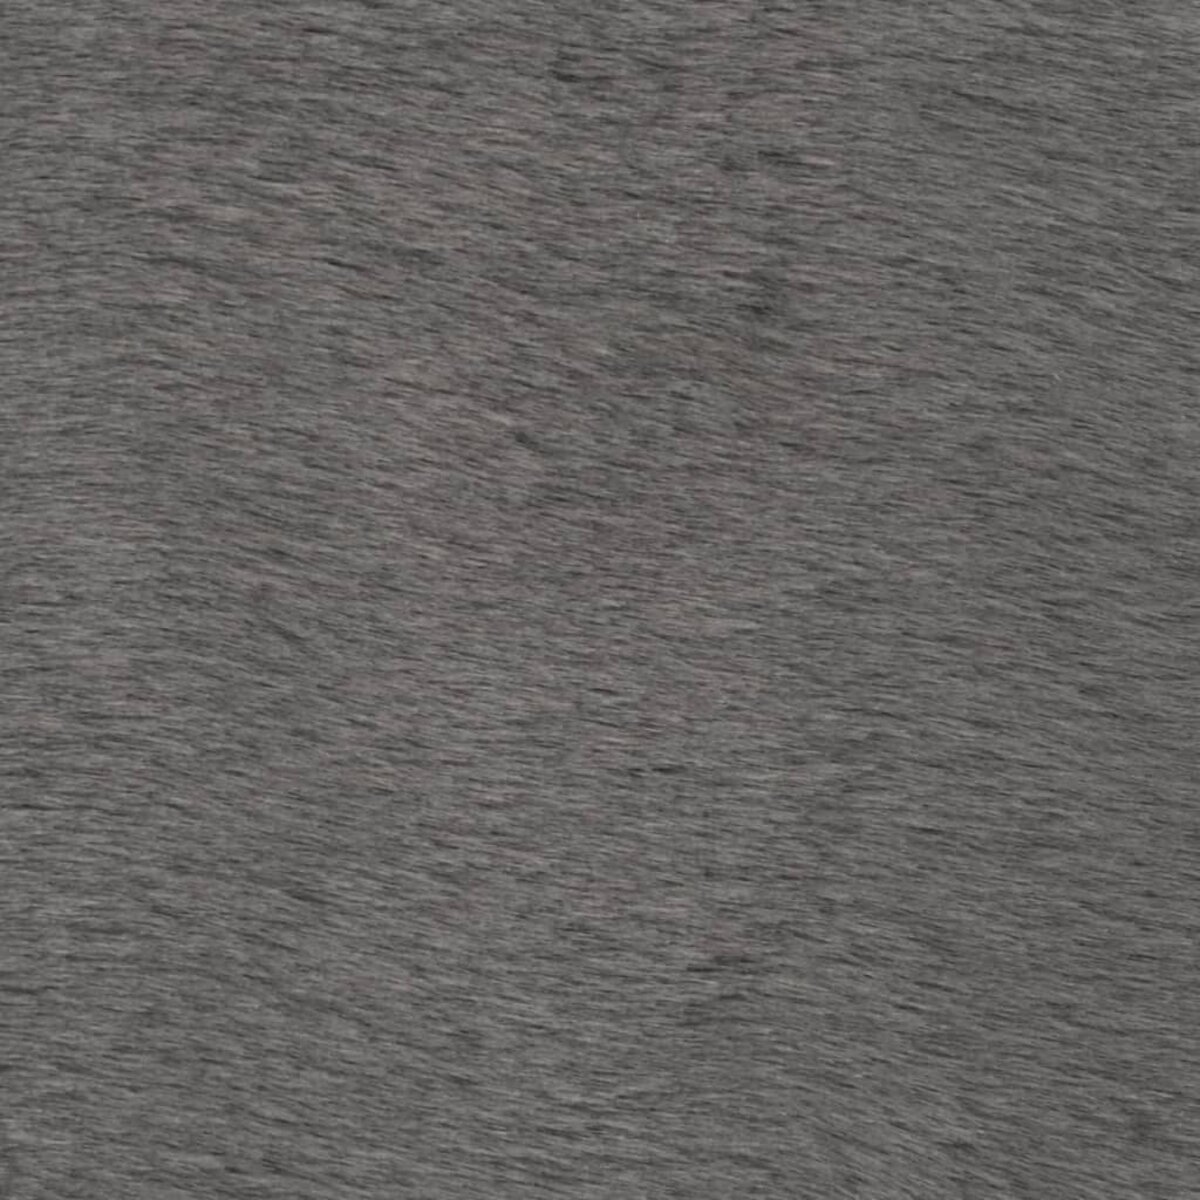 VidaXL Tapis 120x160 cm fausse fourrure de lapin gris foncé - VX285090 -  Epto